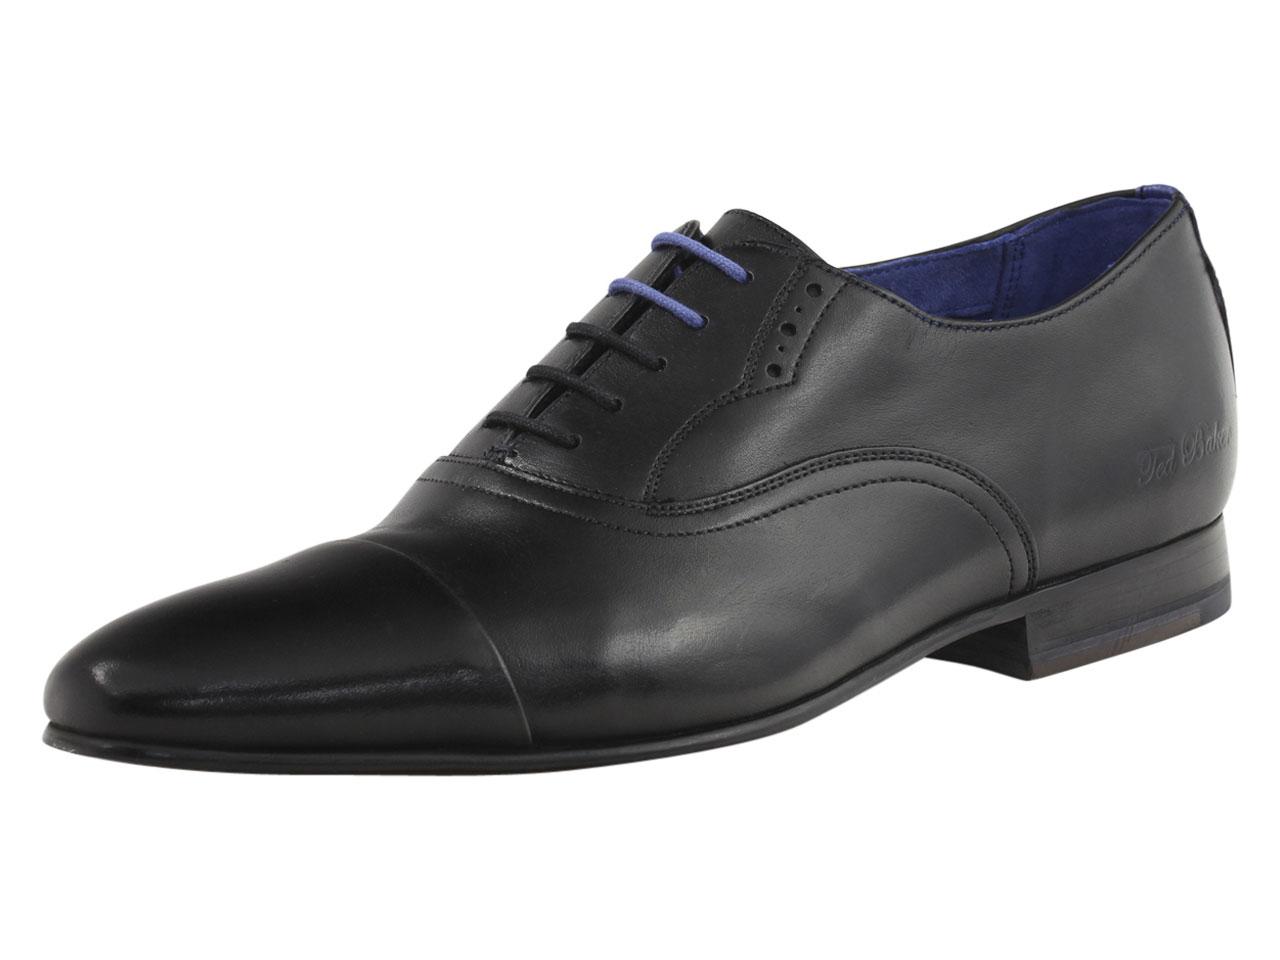 Ted Baker Men's Murain Fashion Oxfords Shoes - Black - 13 D(M) US